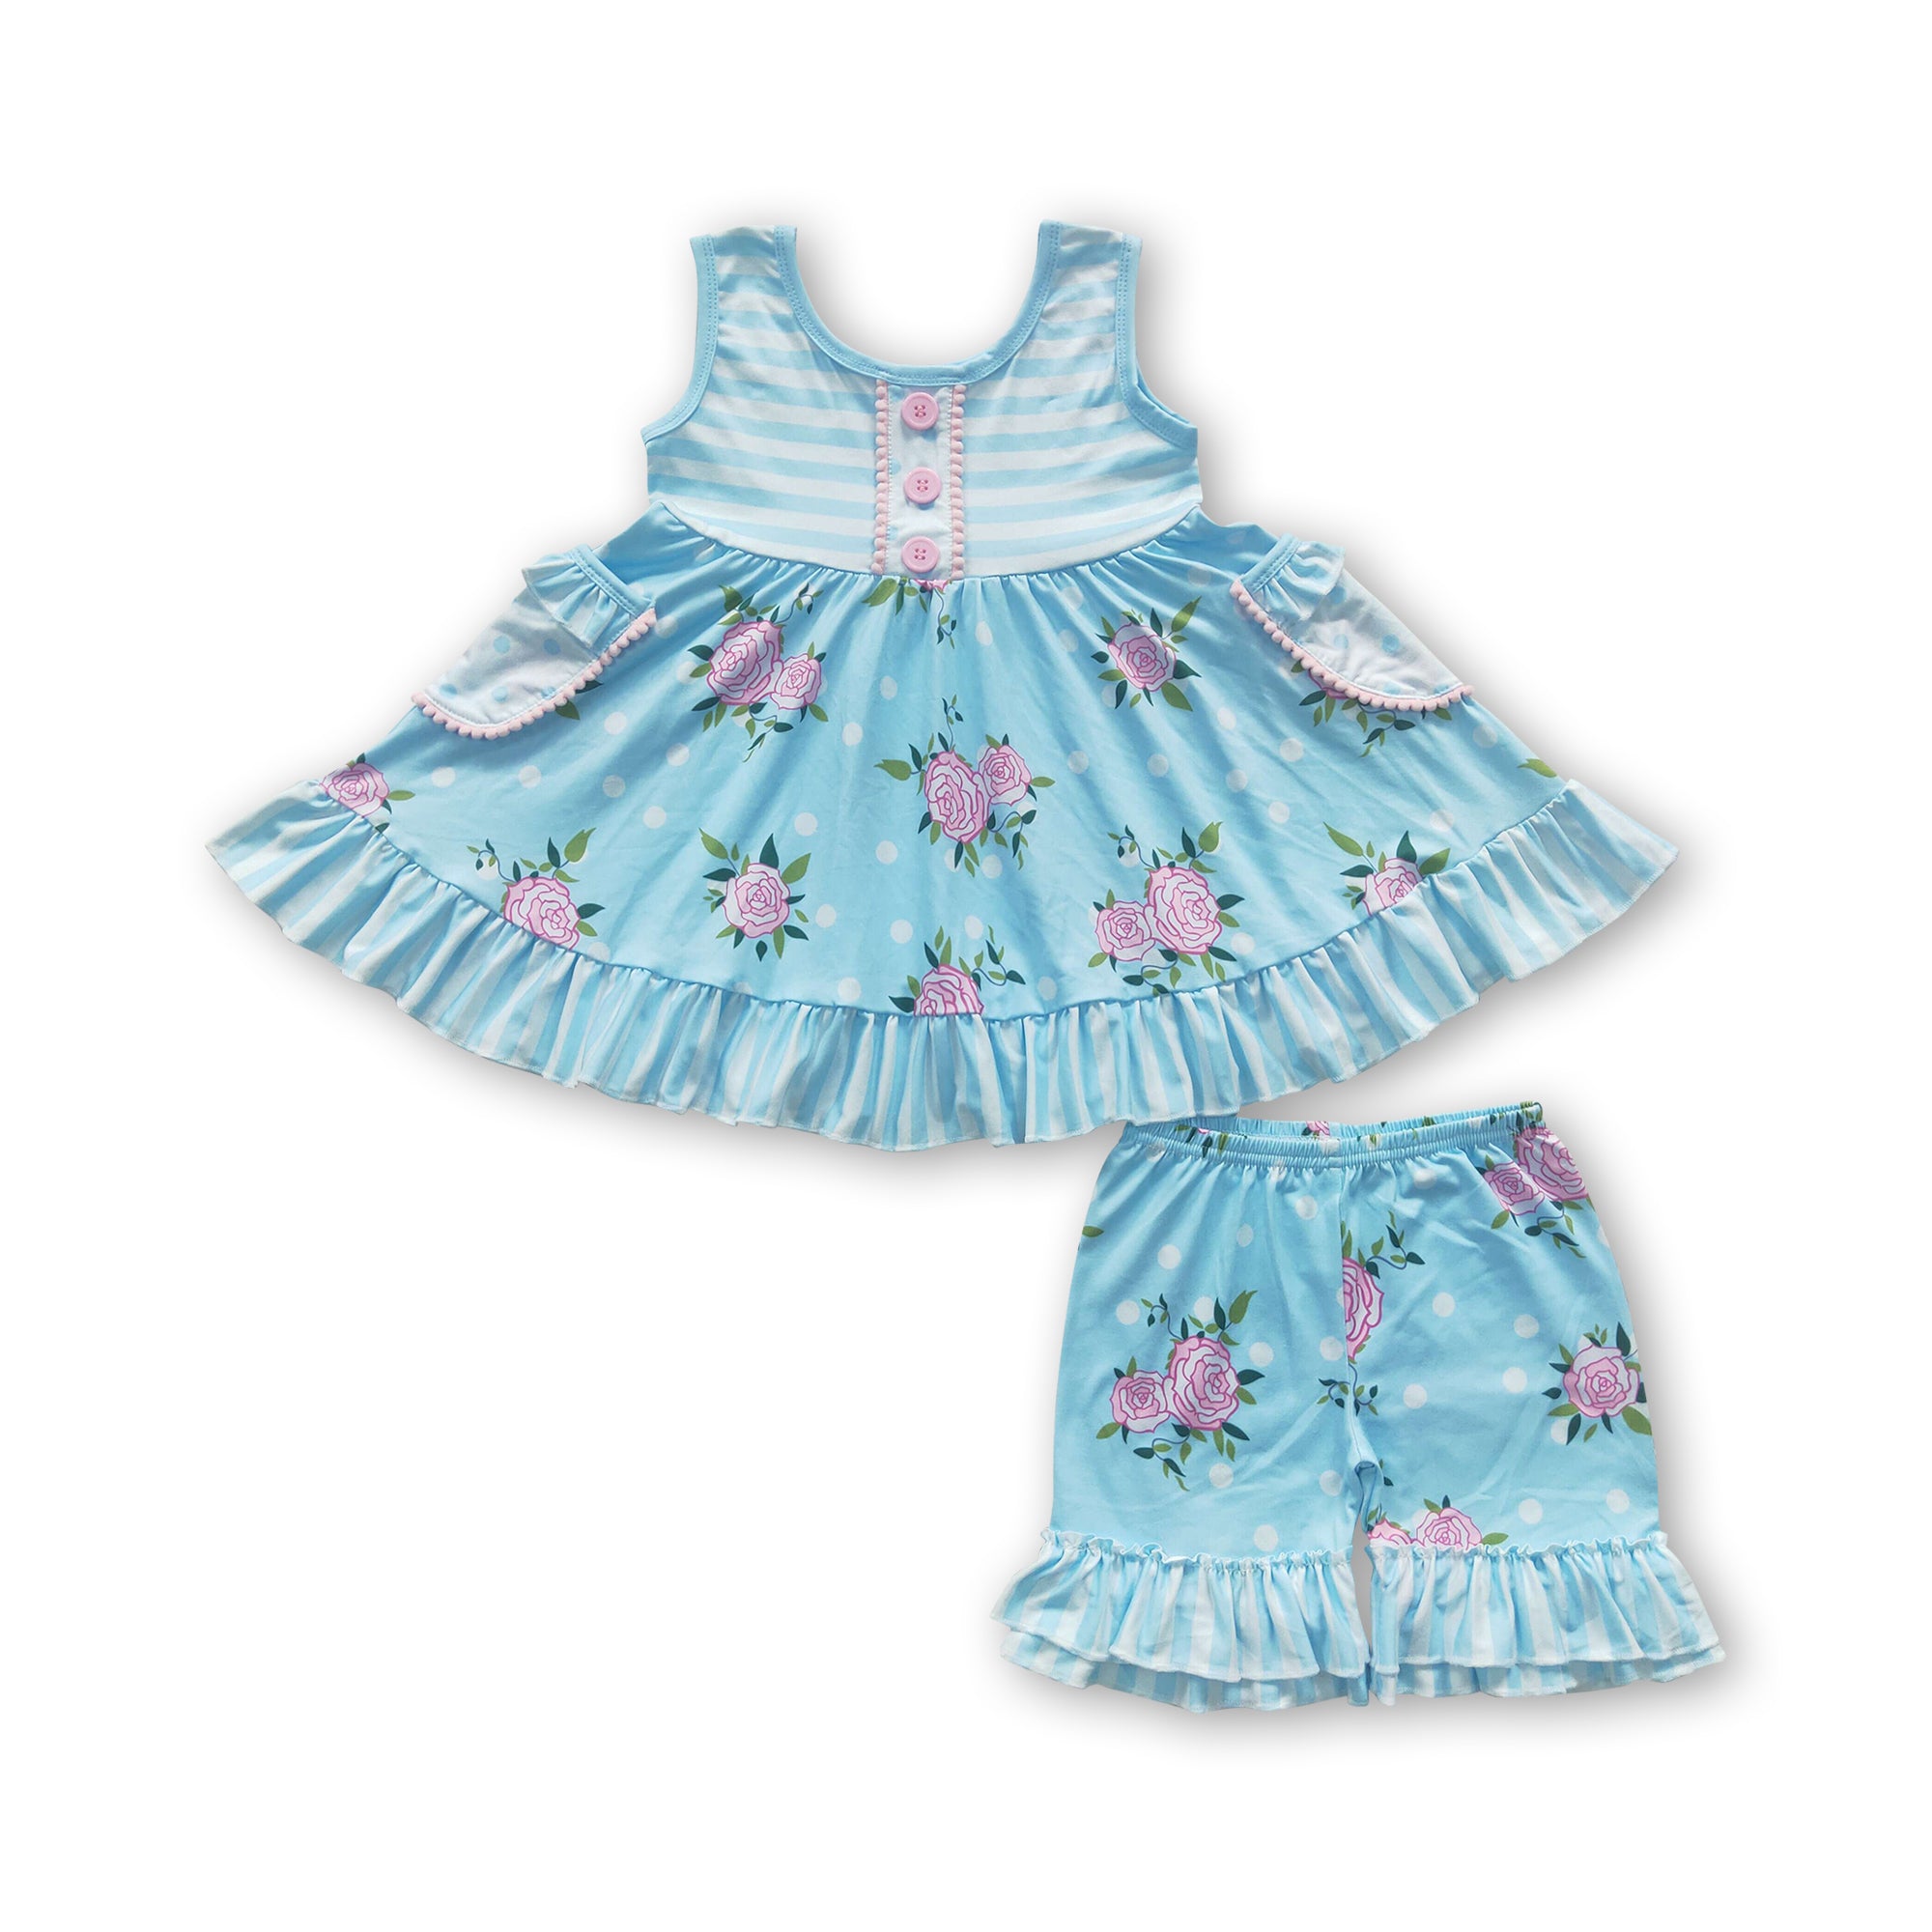 A17-2 girl clothes blue flower stripe sleeveless summer set